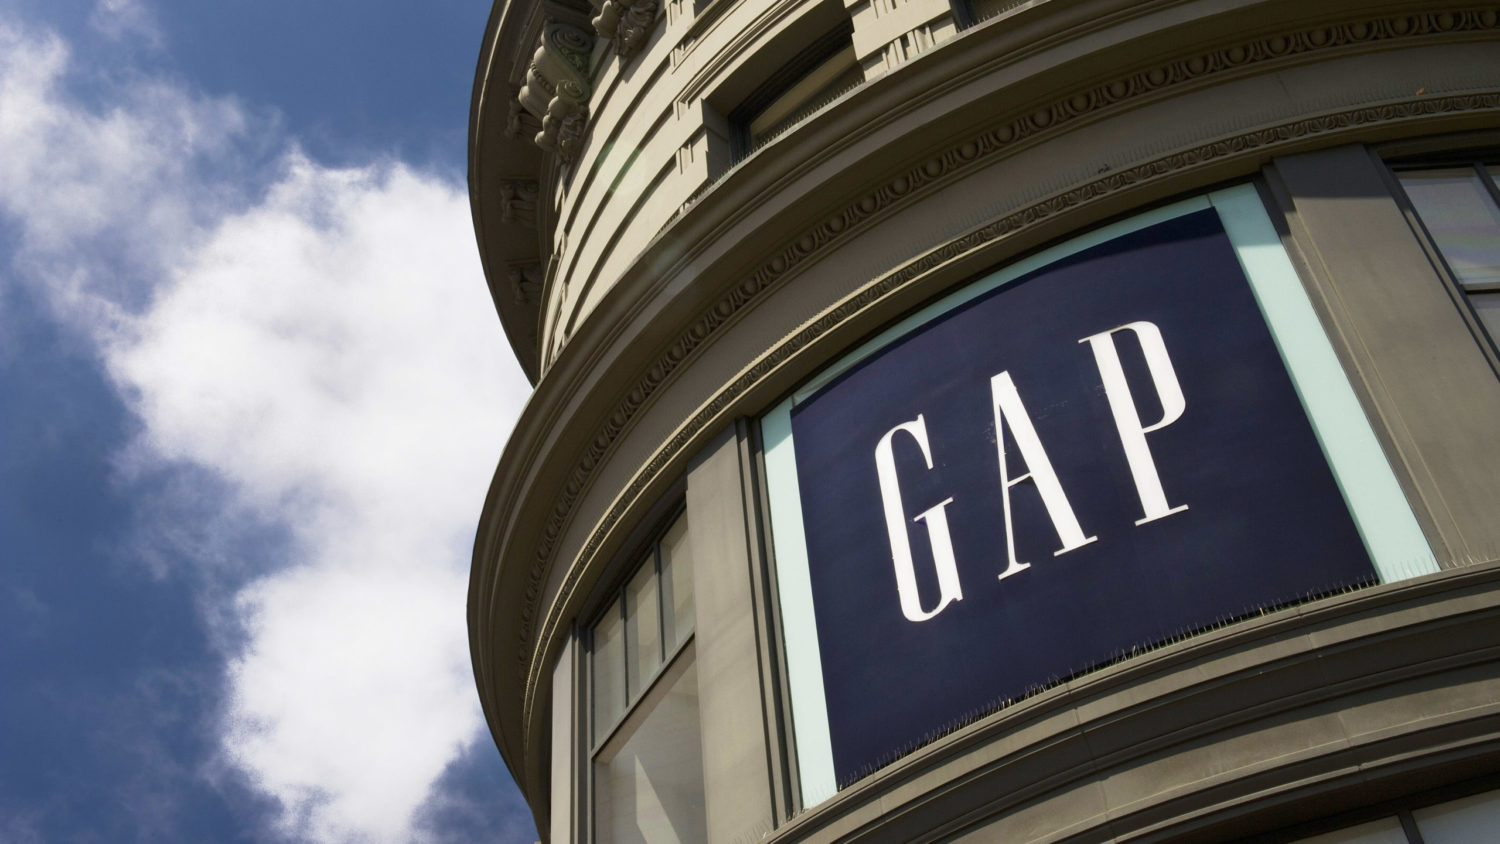 Gap cerrará sus tiendas en Europa - Just Retail